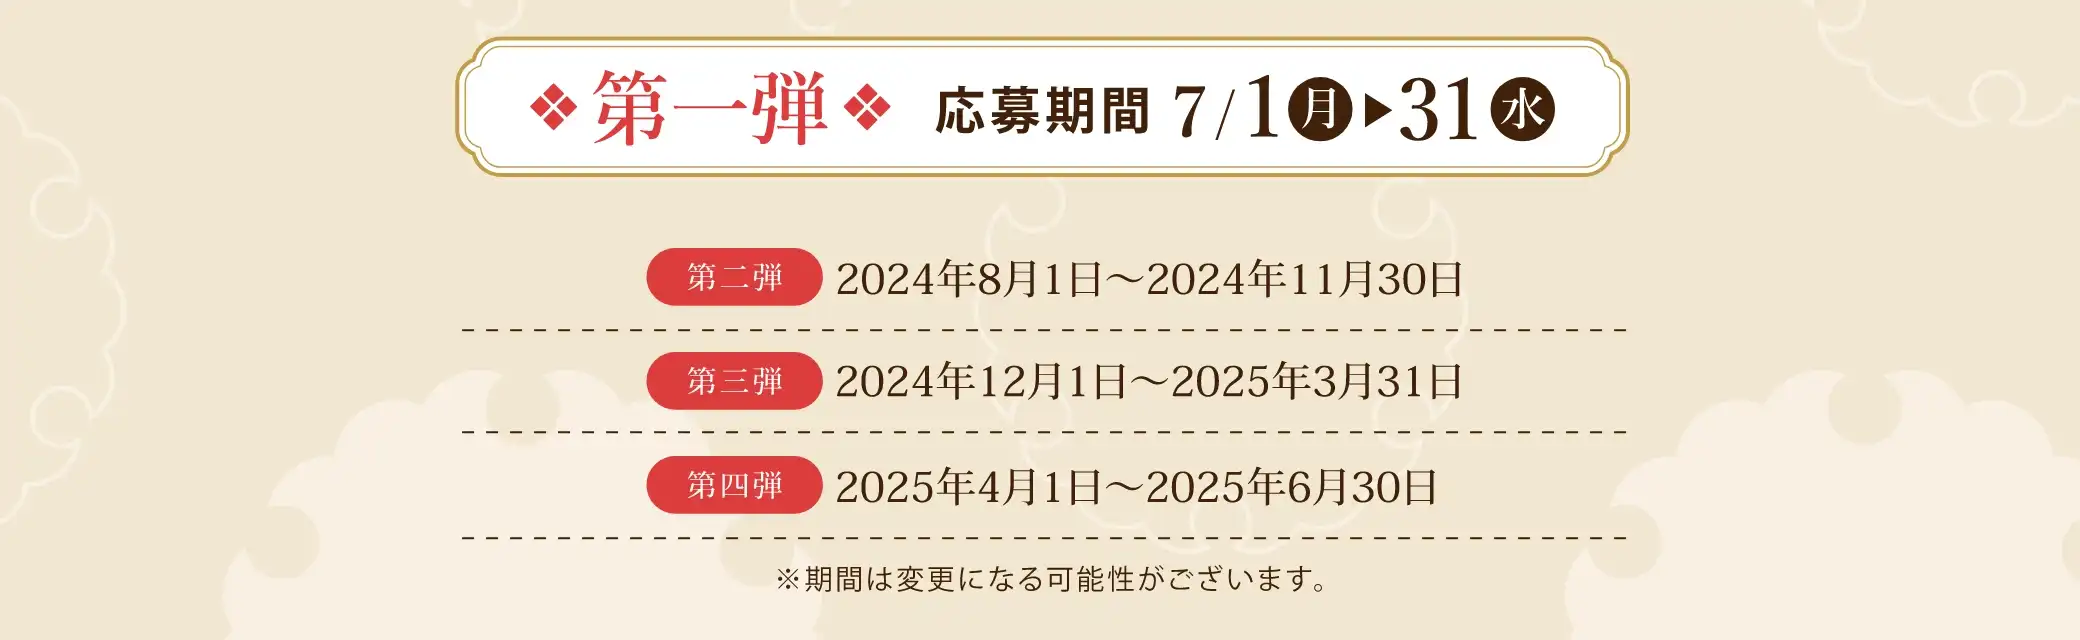 イベントスケジュール：第一弾 2024/7/1(月)~2024/7/31(水)、第二弾 2024/8/1(木)~2024/11/30(土)、第三弾 2024/12/1(日)~2025/3/31(月)、第四弾 2025/4/1(火)~2025/6/30(月) ※期間は変更になる可能性がございます。